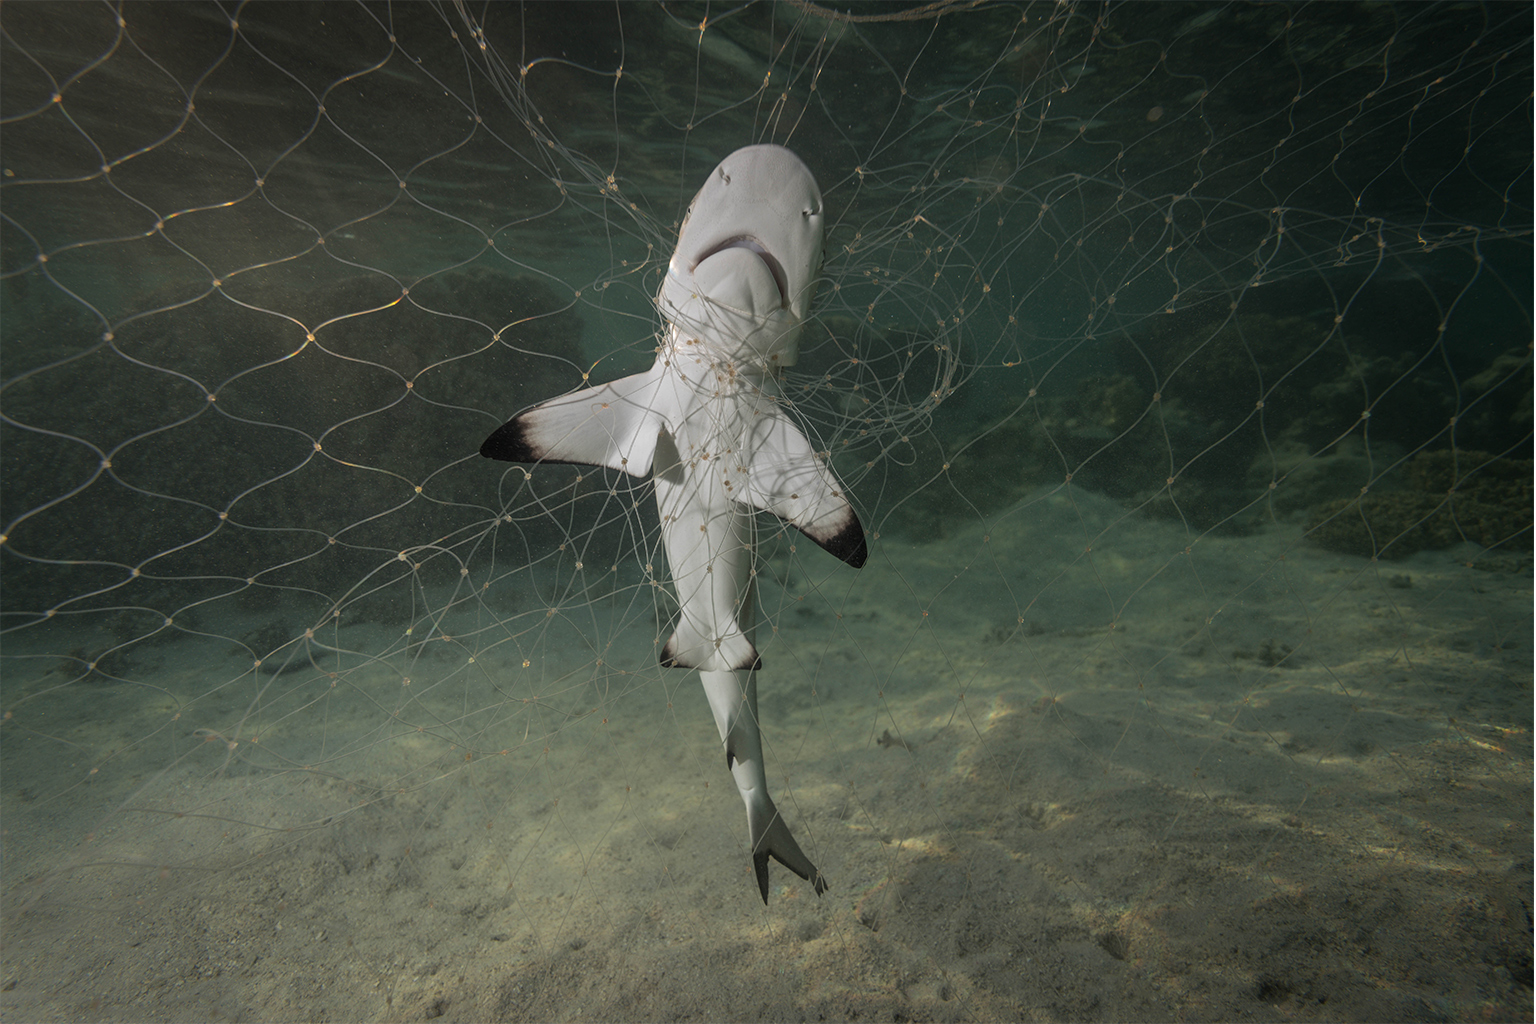 A shark caught in a net.